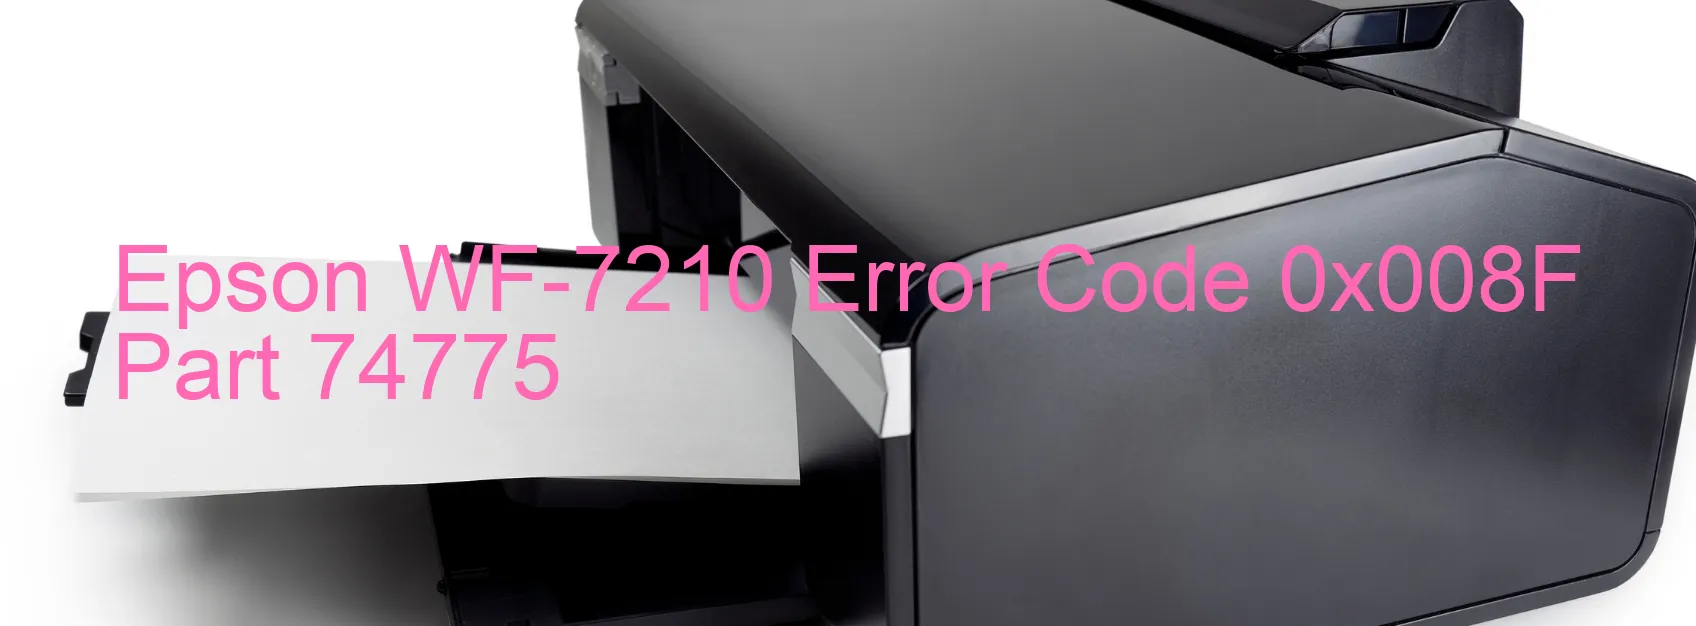 Epson WF-7210 Error 0x008F